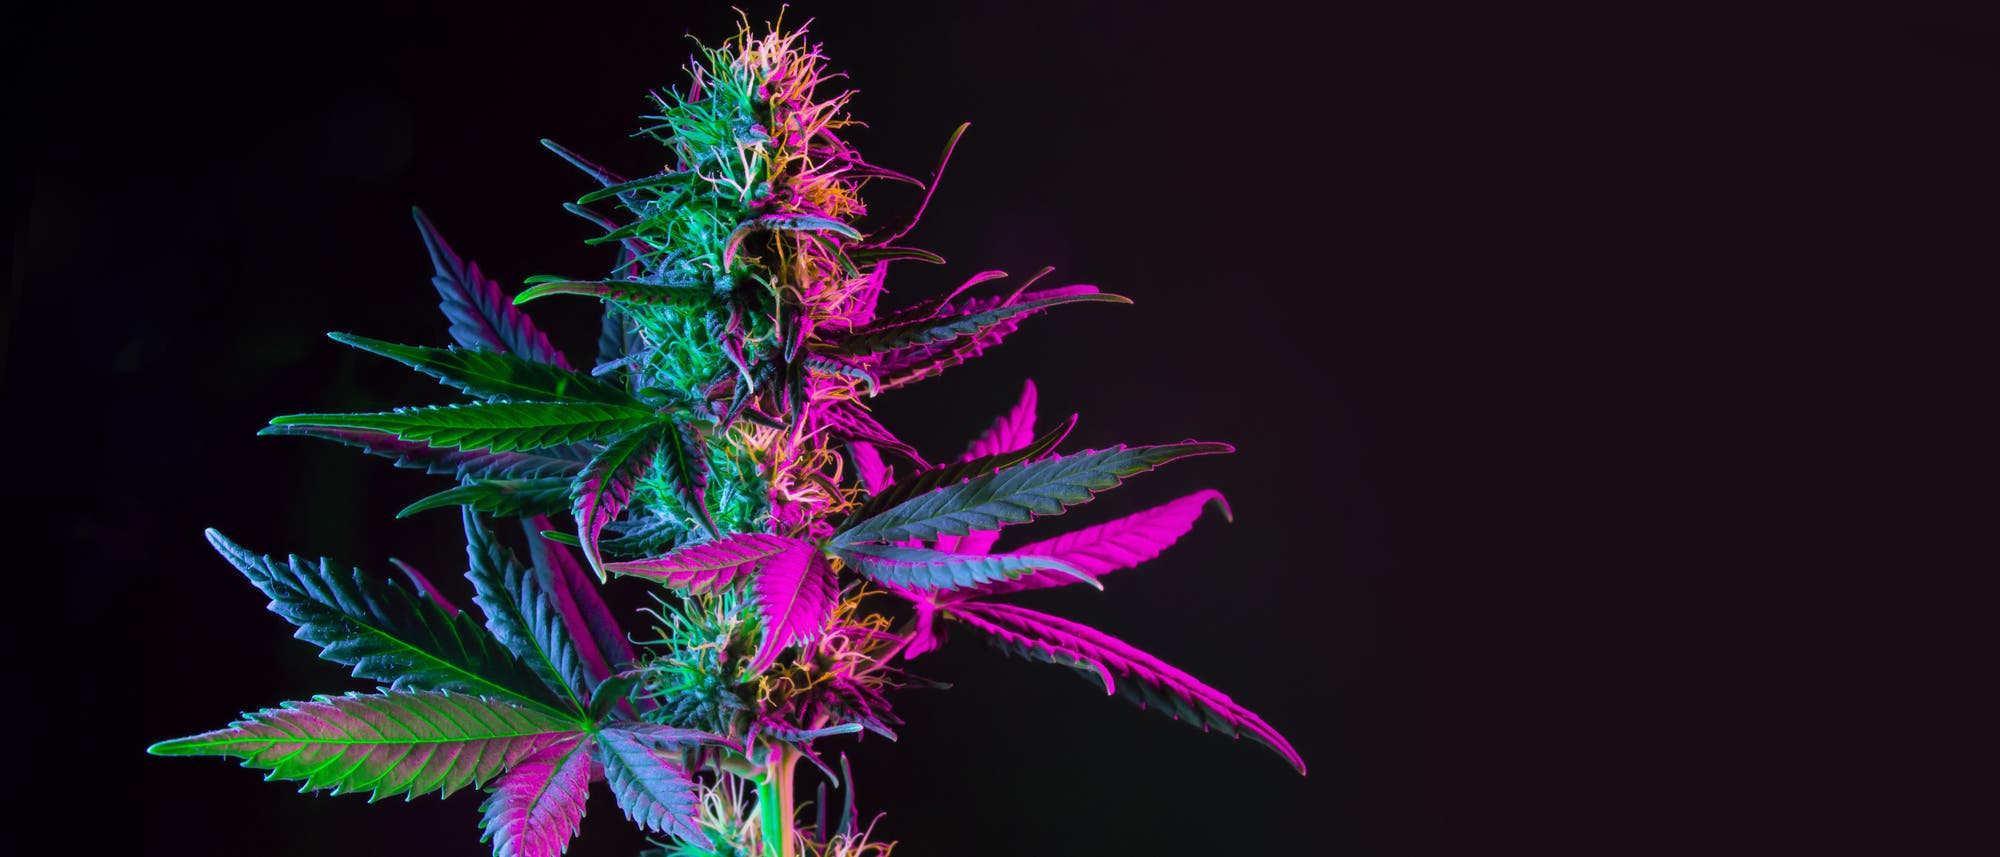 Eine bunt beleuchtete Cannabis-Pflanze